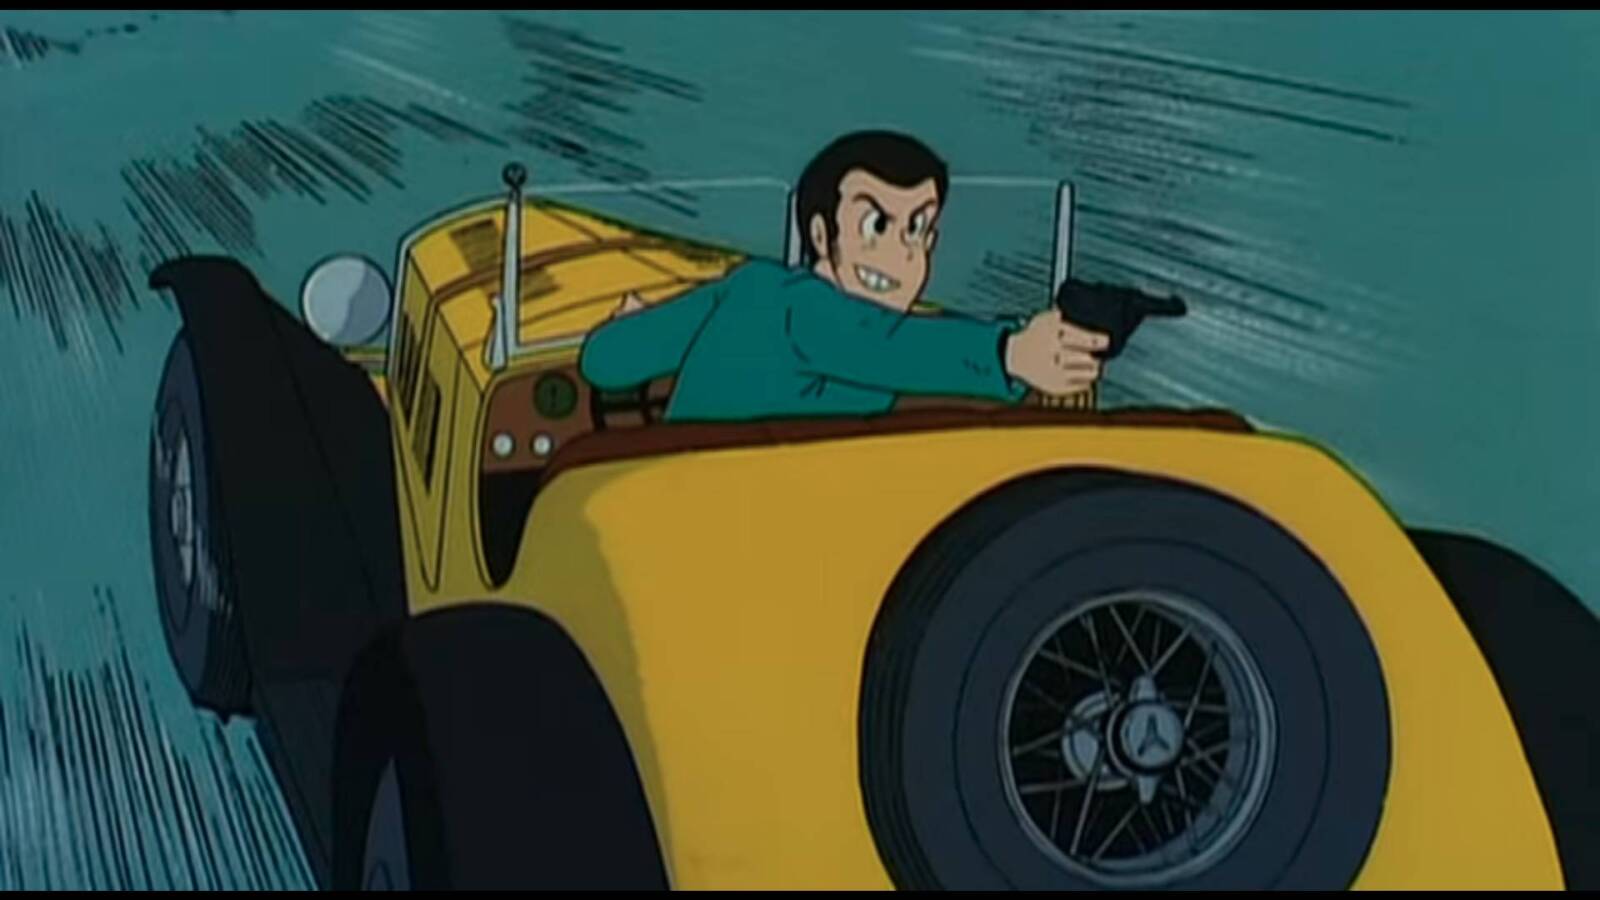 Die Anime-Figur Lupin flieht in einem gelben Auto und schießt mit einer Pistole auf seine Verfolgenden.